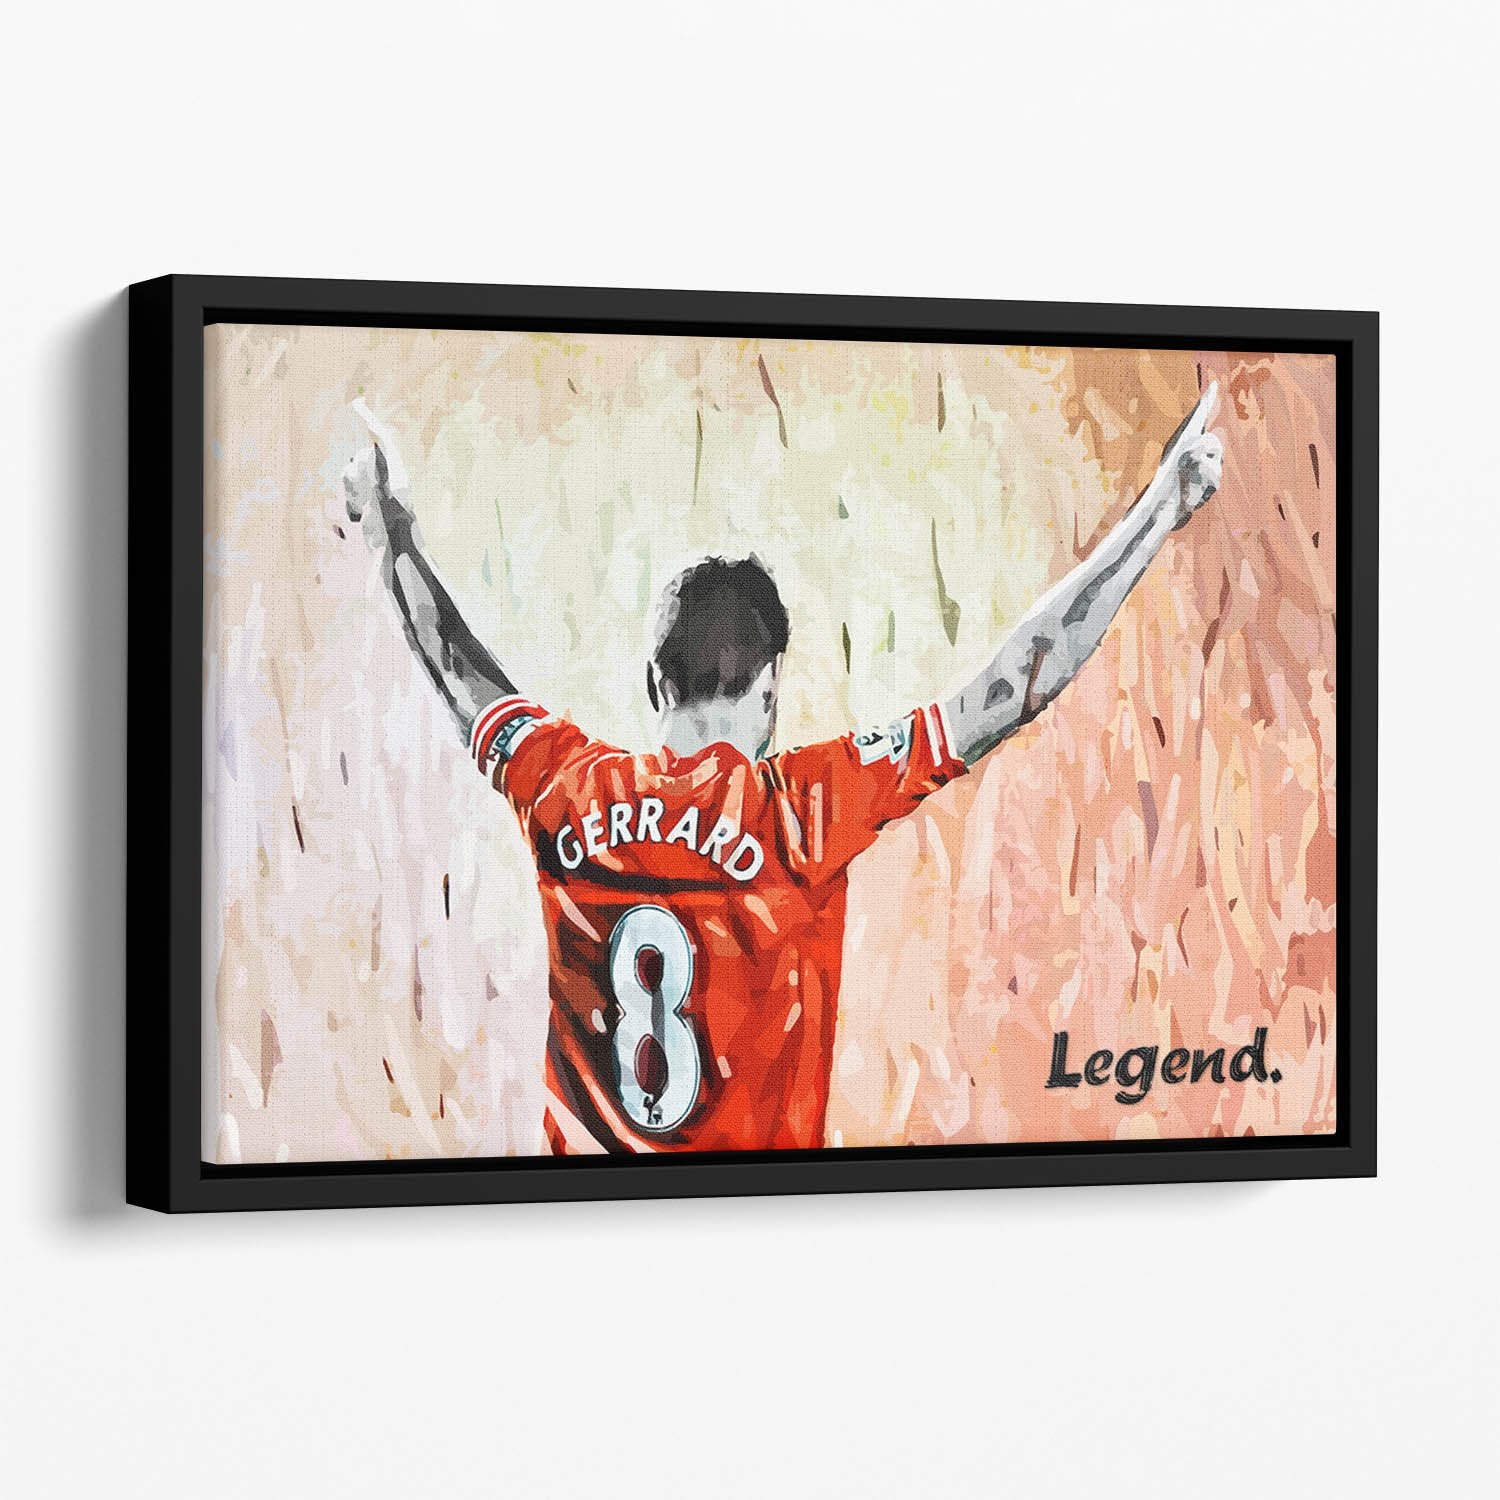 Steven Gerrard Legend Floating Framed Canvas